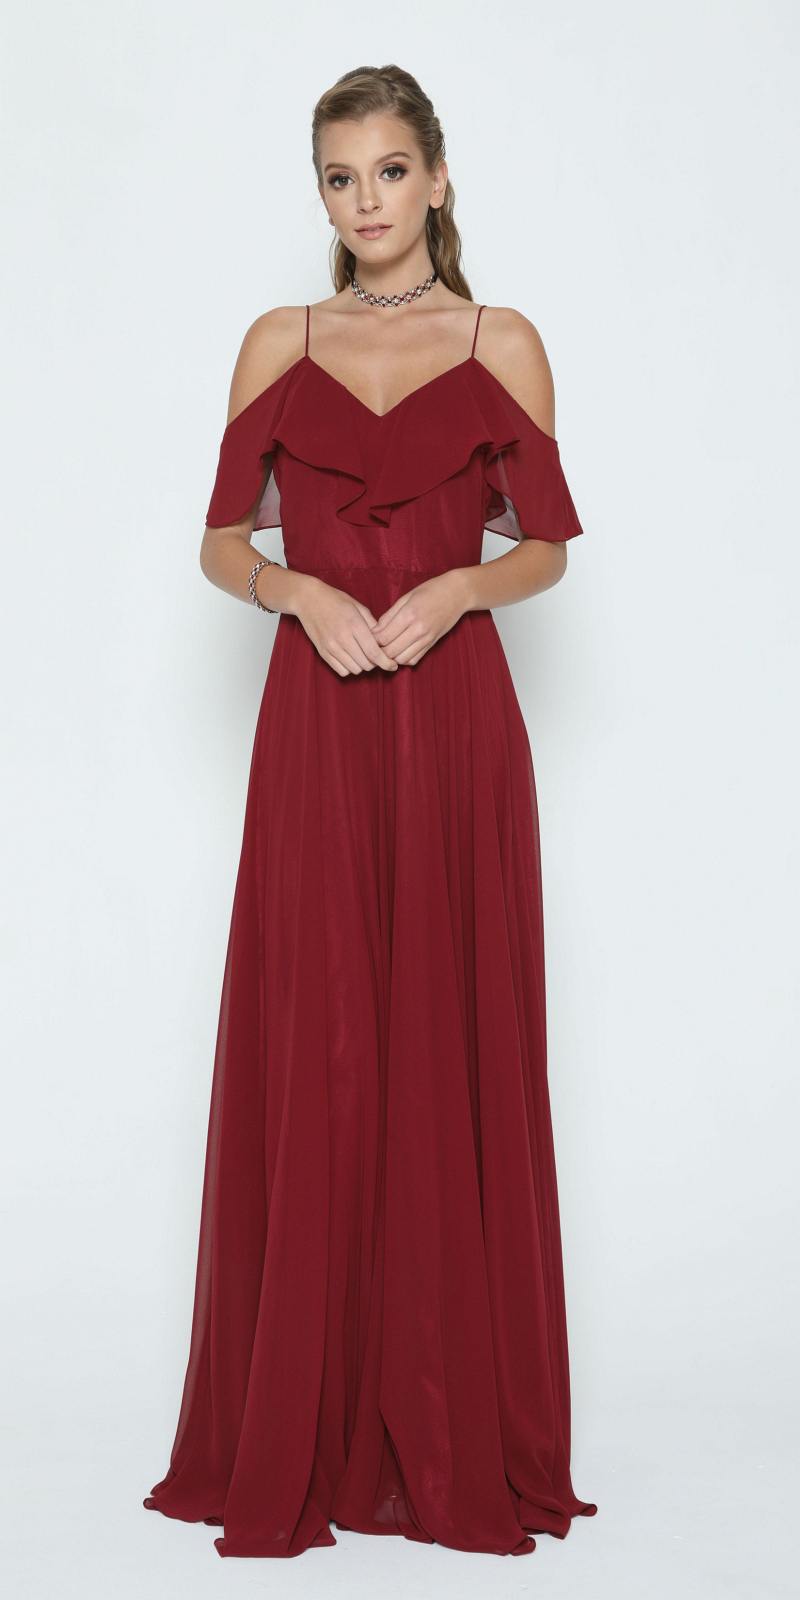 Burgundy A-line Long Formal Dress Ruffled Cold-Shoulder